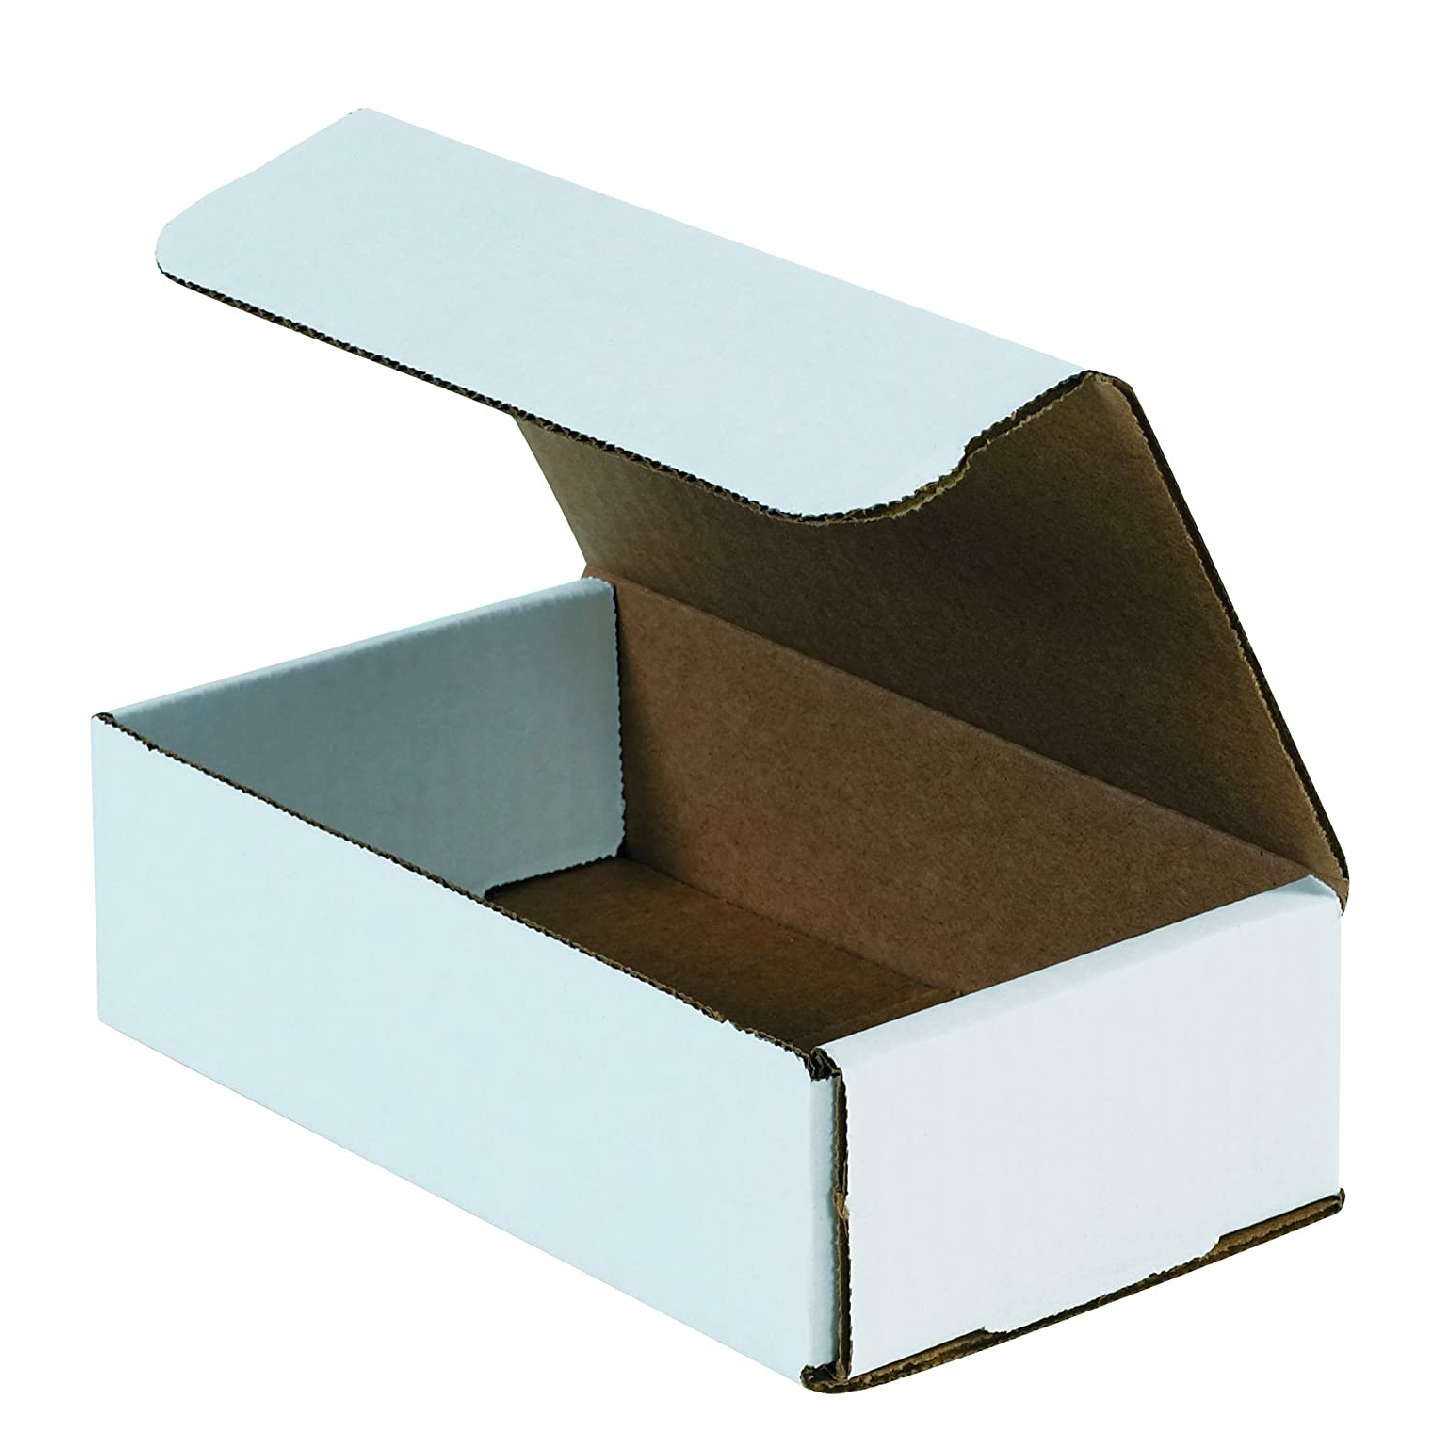 8×4×2 Merchandise Box, Quantity: 5